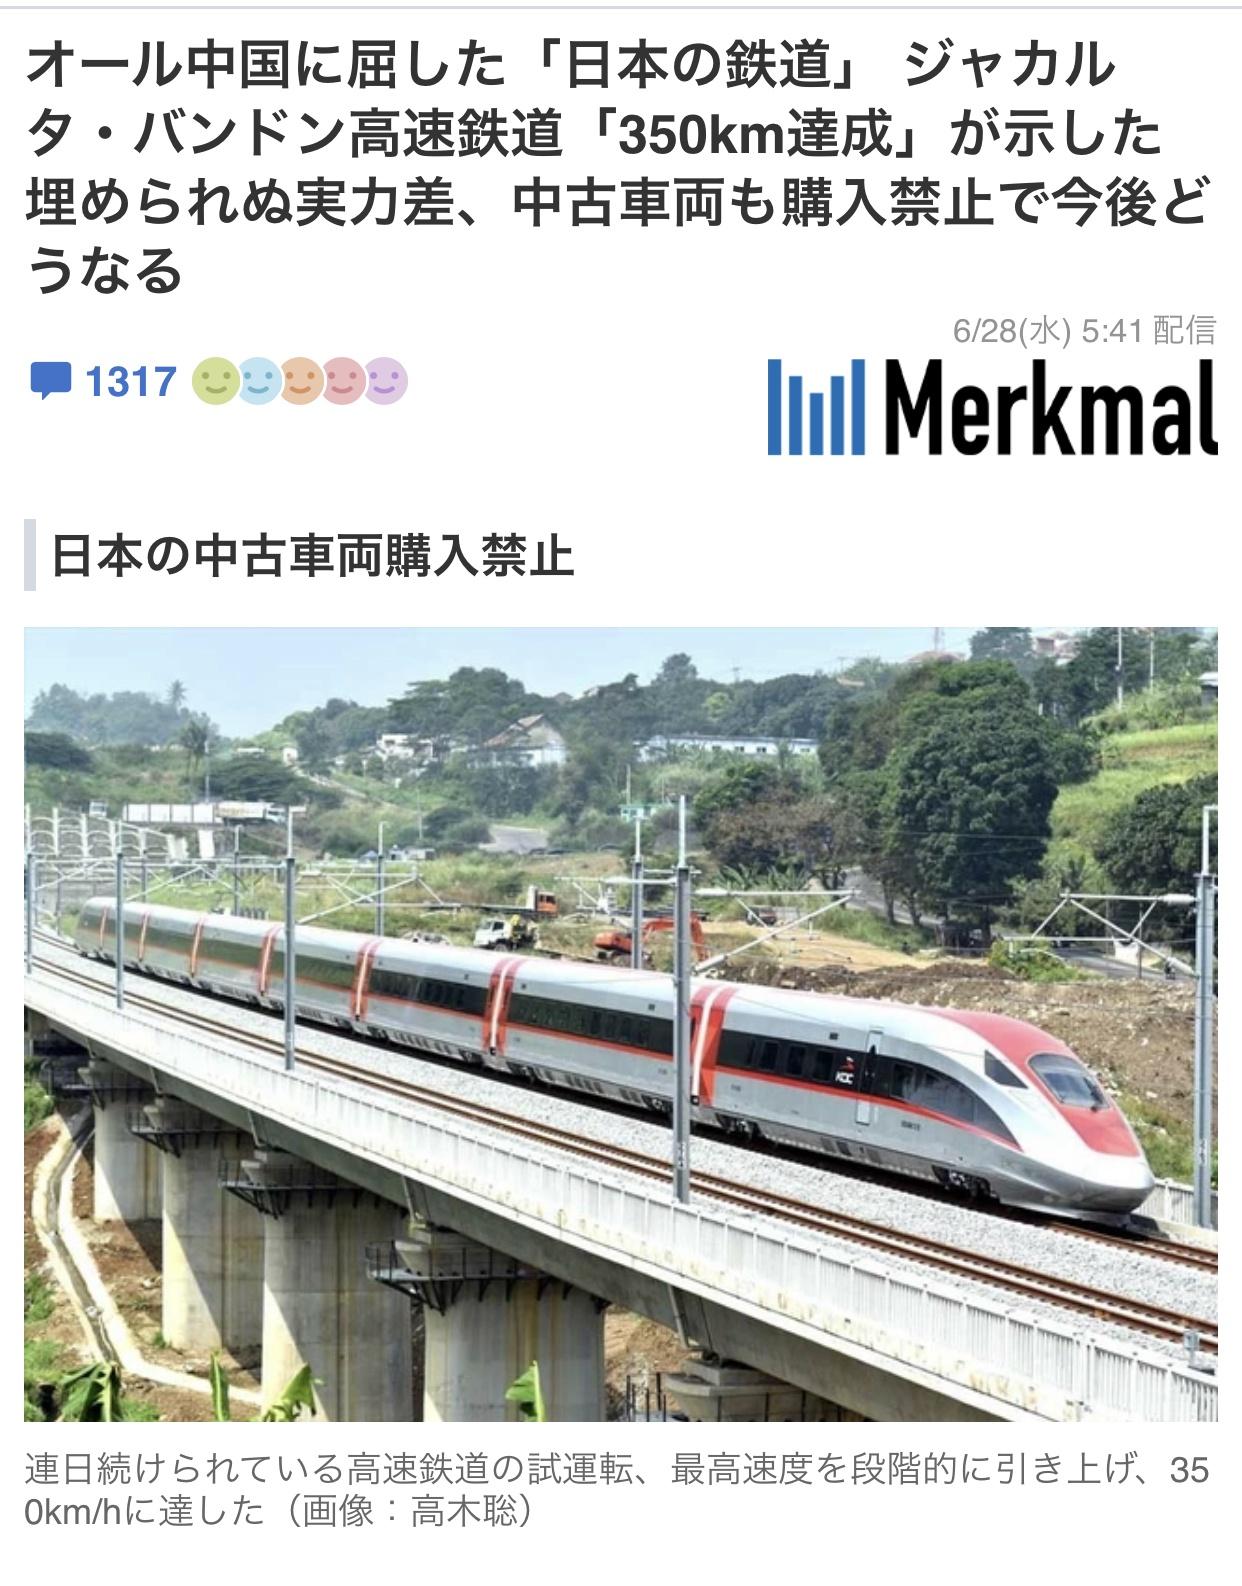 インスタ欧米人「ワオ！中国の高速鉄道、世界一の品質だよ！」→コメント欄で日本人が日本語で発狂